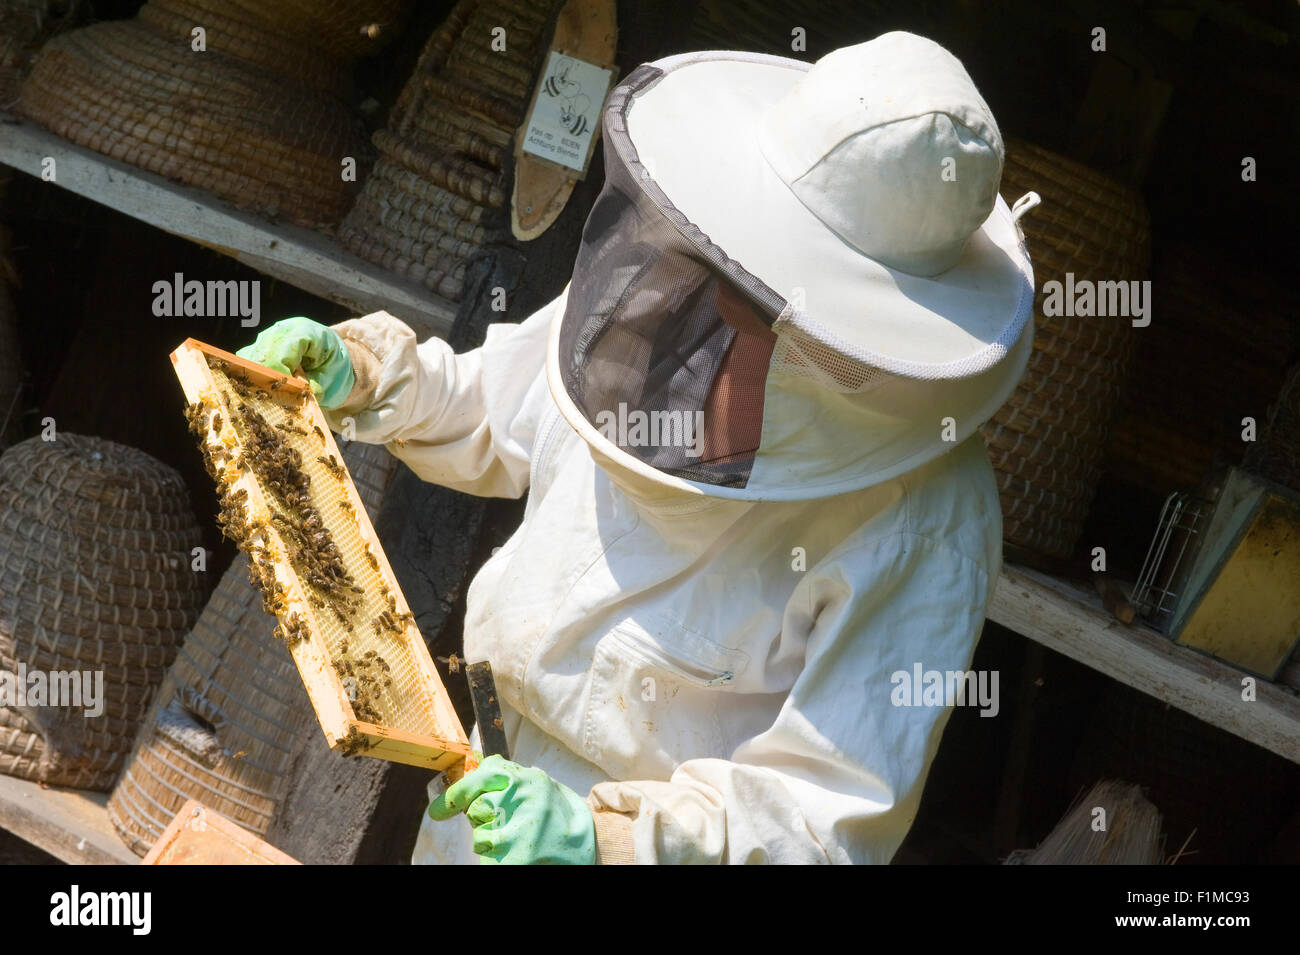 Eibergen, Pays-Bas - Aug 08, 2015 : Un contrôle est apiculteur la trame d'un rayon de miel et le port de vêtements de protection Banque D'Images